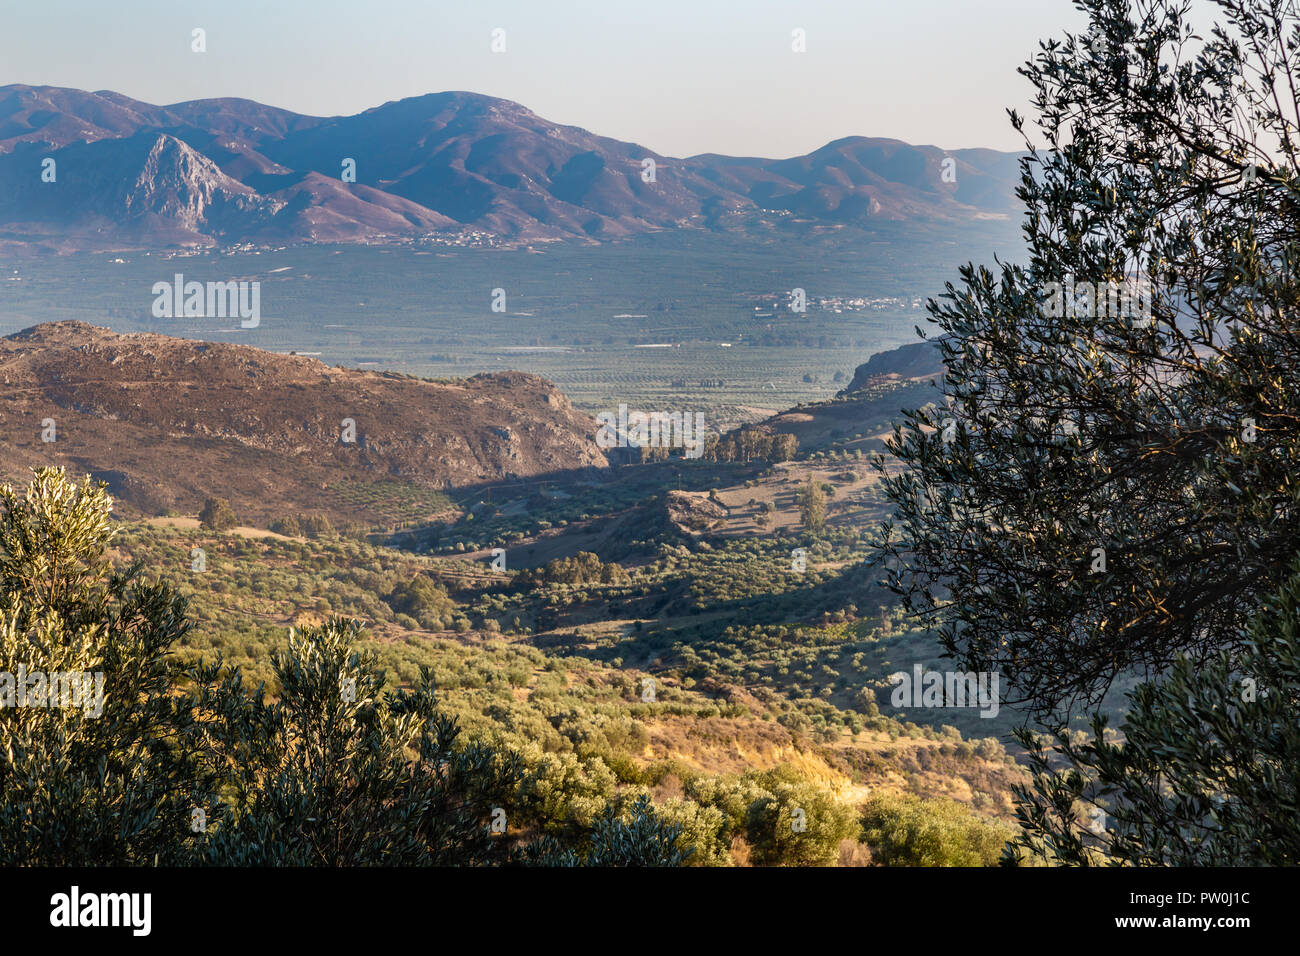 Las plantaciones de olivos en las altas montañas de la isla de Creta, Grecia Foto de stock